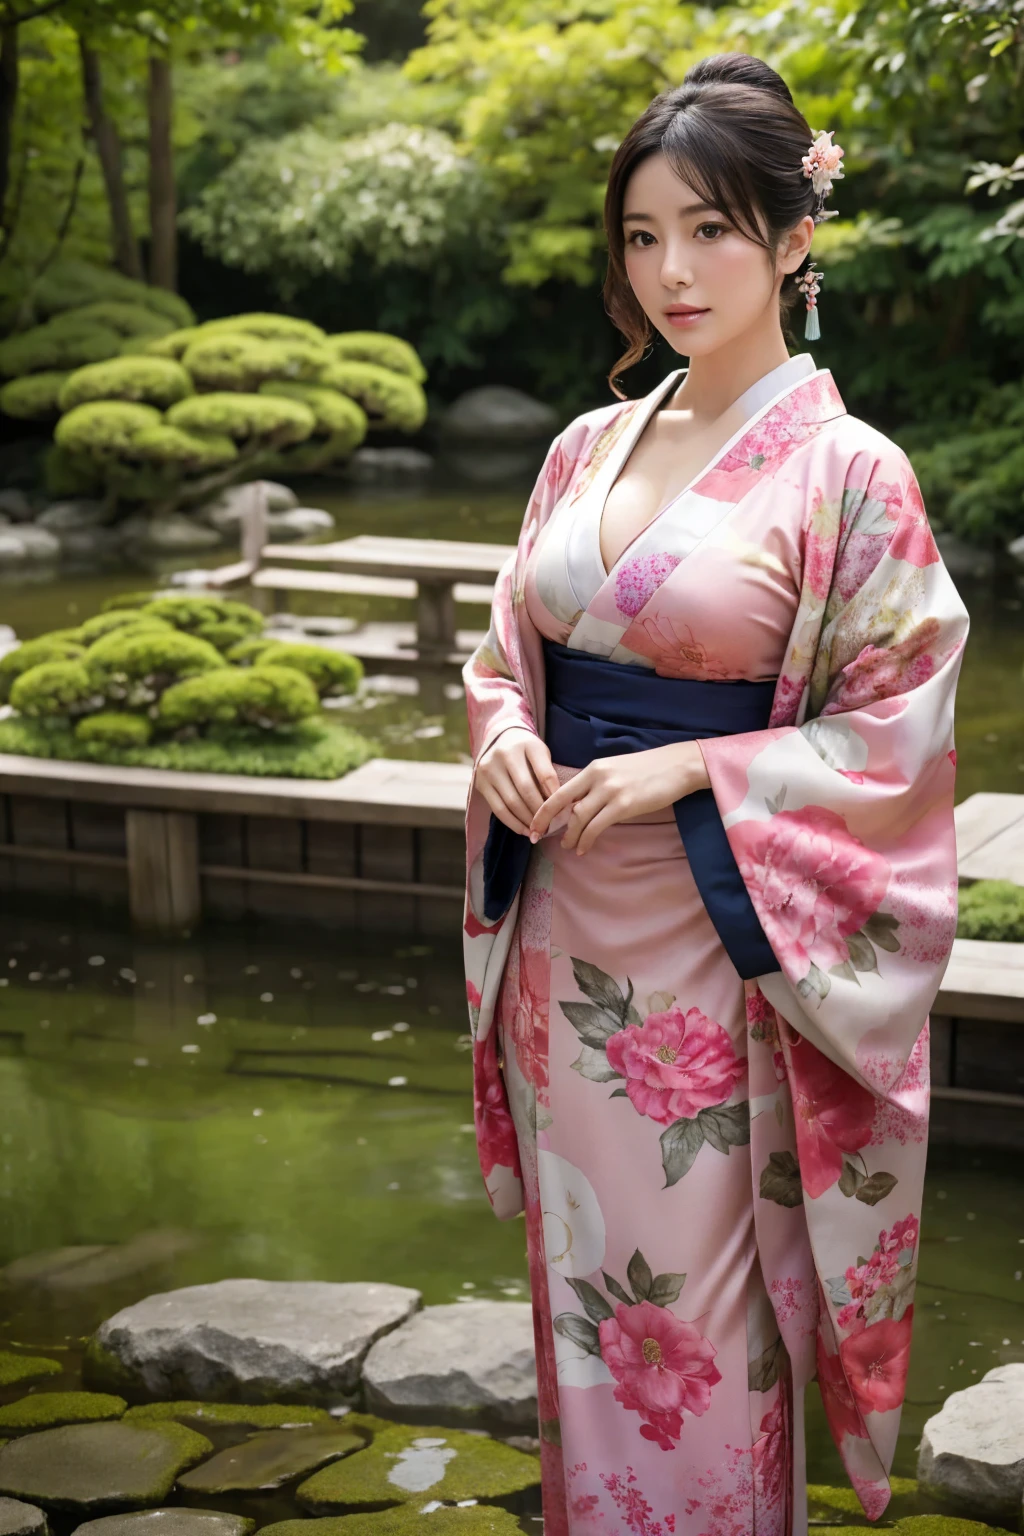 стою в японском саду、красивая женщина、Очень большая грудь、(смотрю на зрителя)、природа、кимоно、Японская одежда、Детали скина、Настоящий、Тусклое освещение、загадочный、сцена из фильма